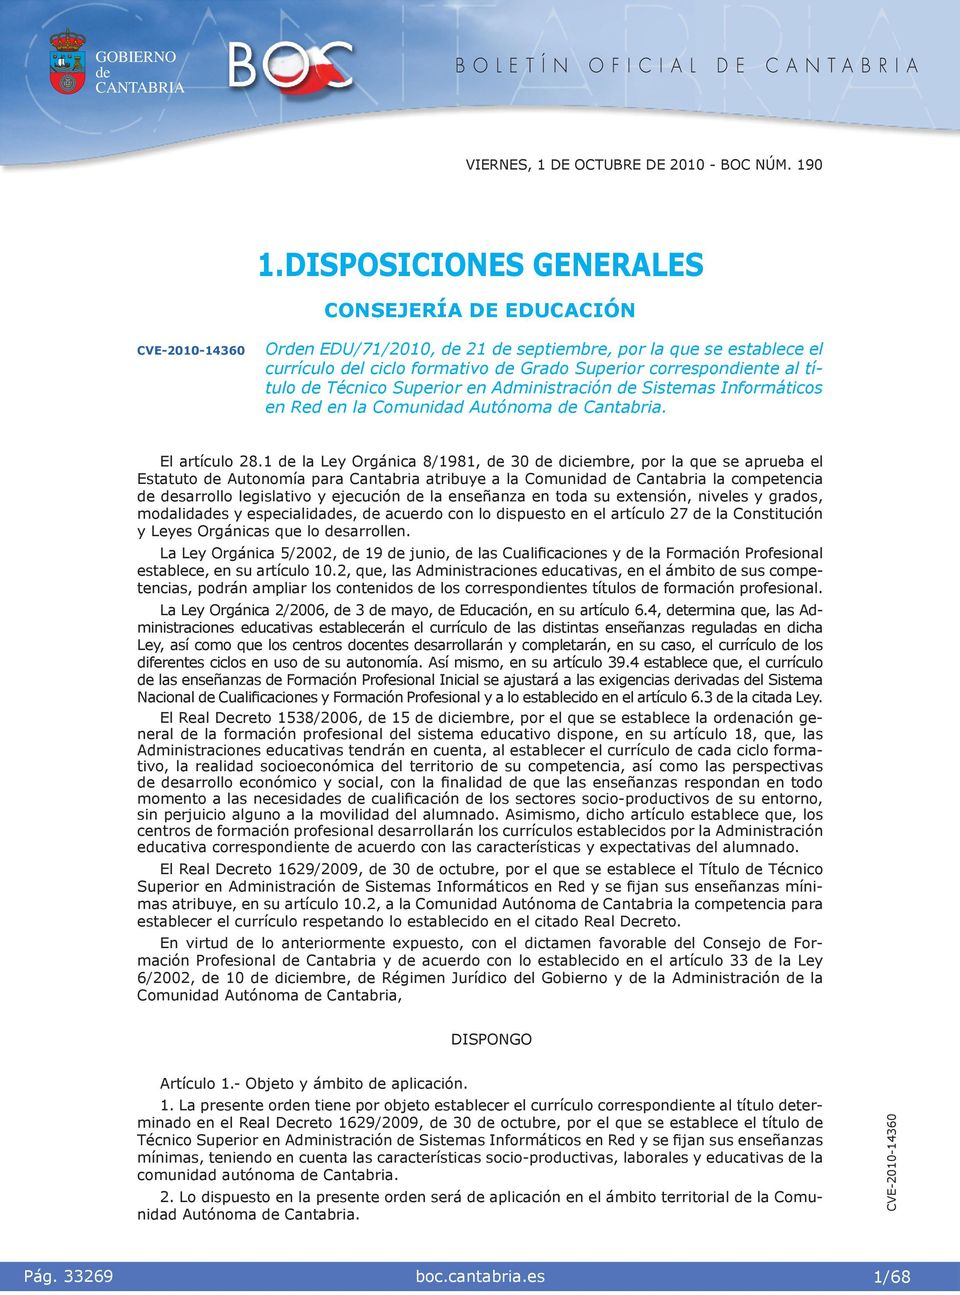 Admnstracón Sstemas Informátcos en Red en la Comundad Autónoma Cantabra. El artículo 28.